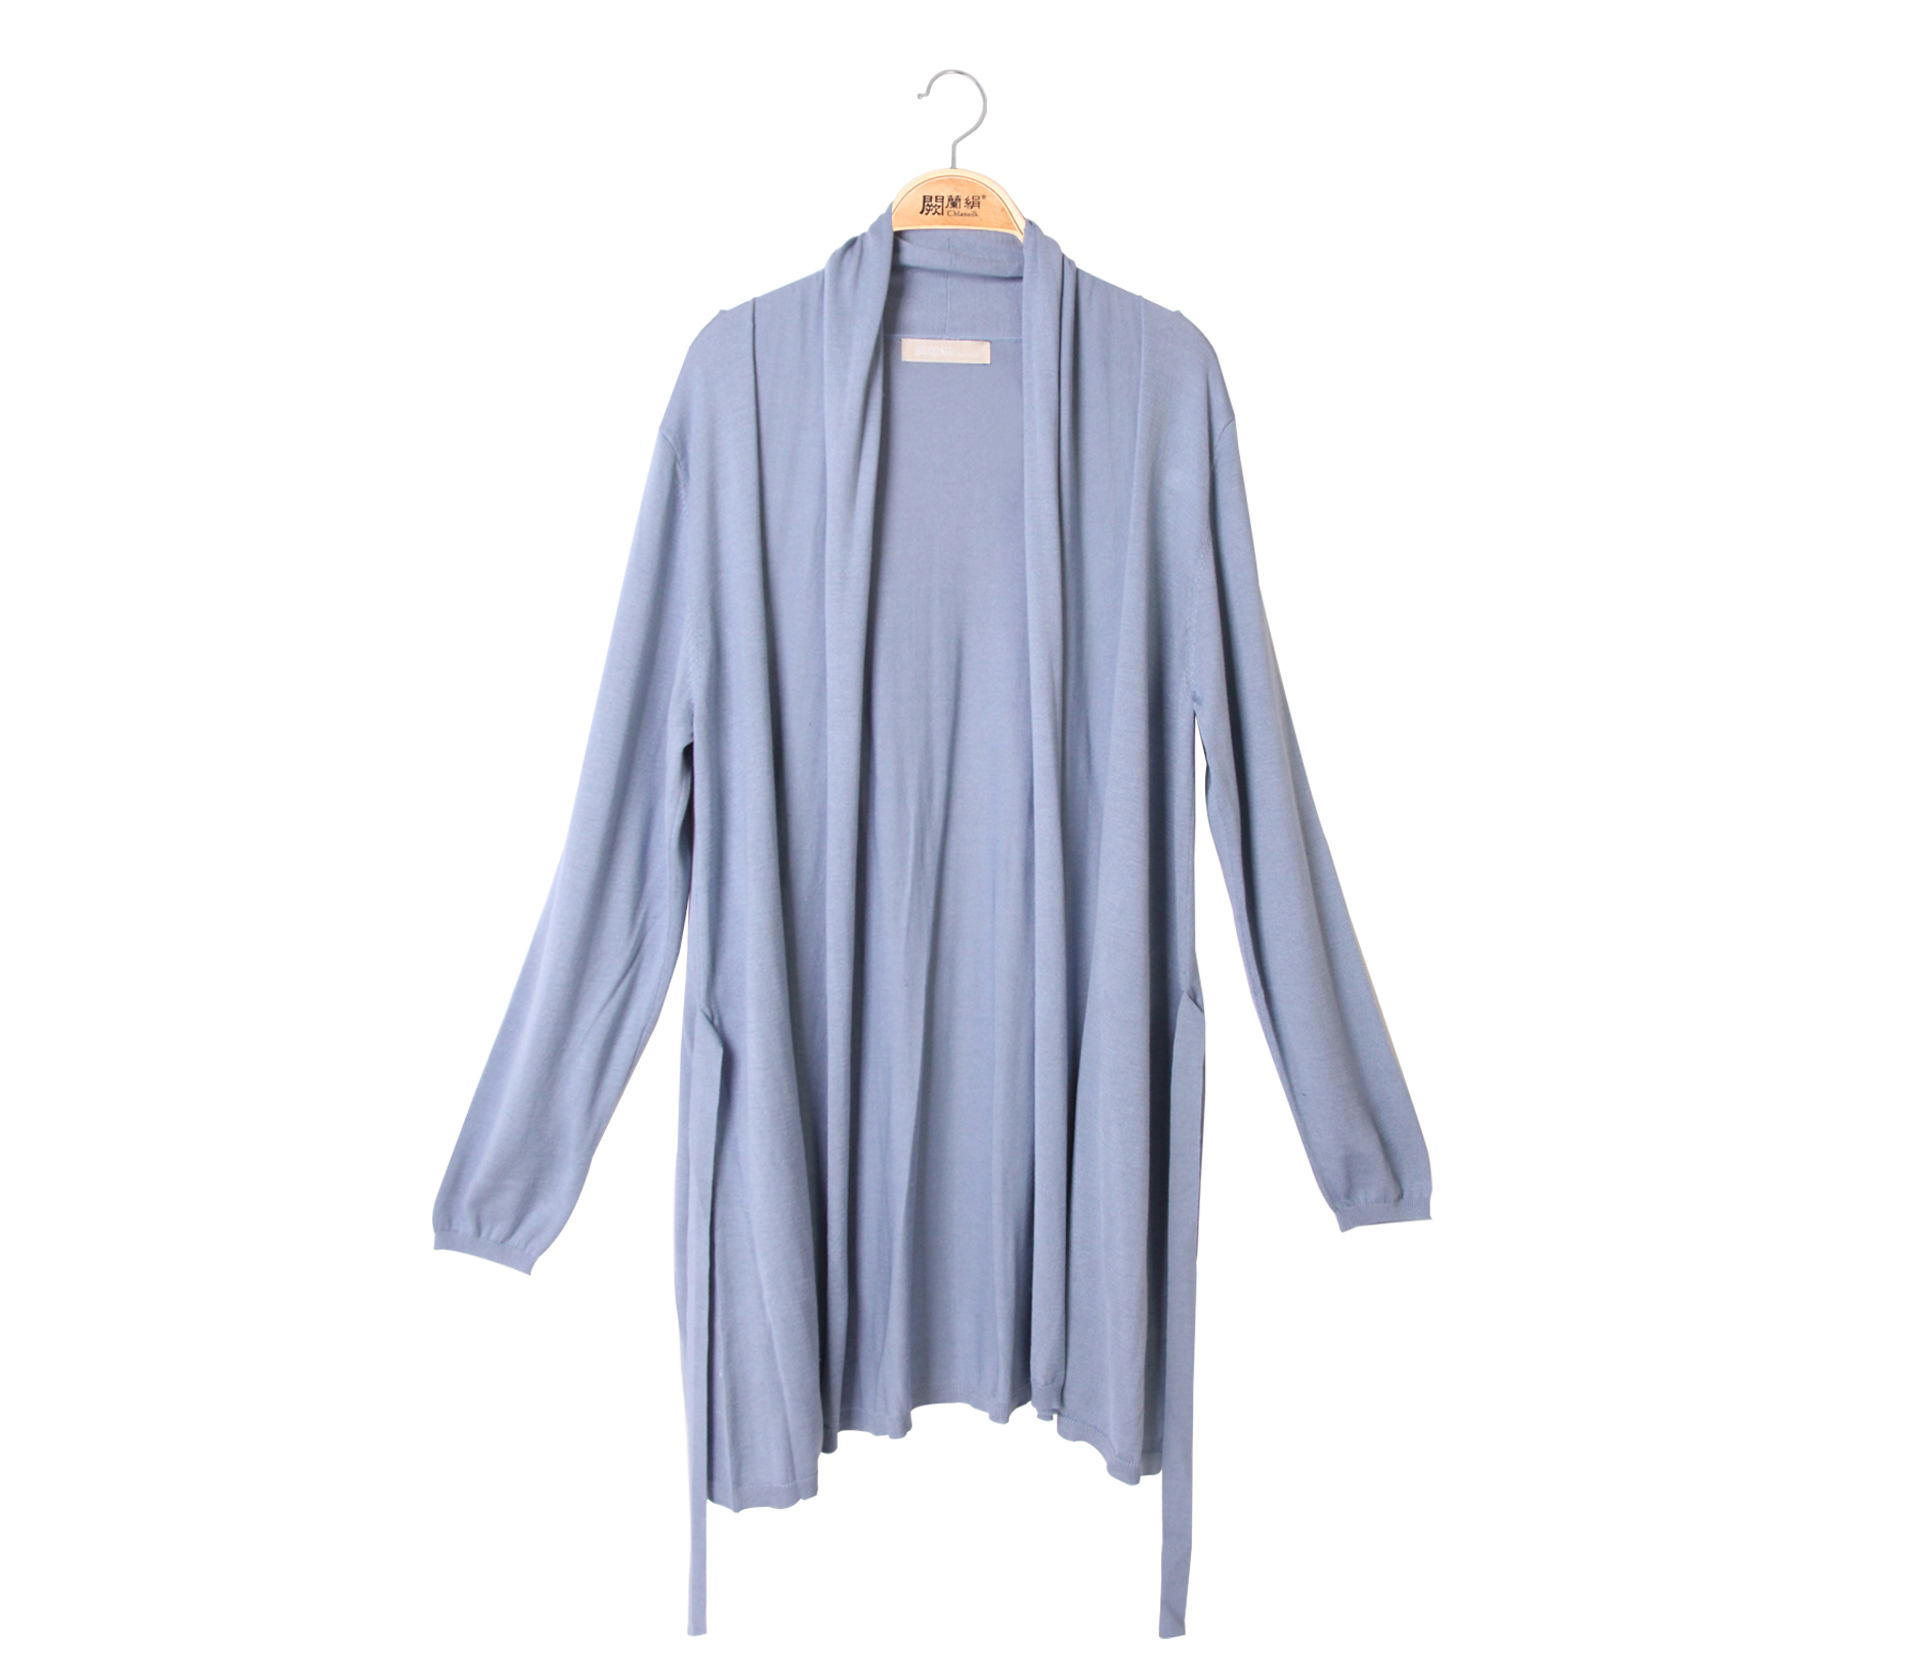 【直播福利品】闕蘭絹蠶絲針織罩衫綁帶外套 – 藍 - 6619